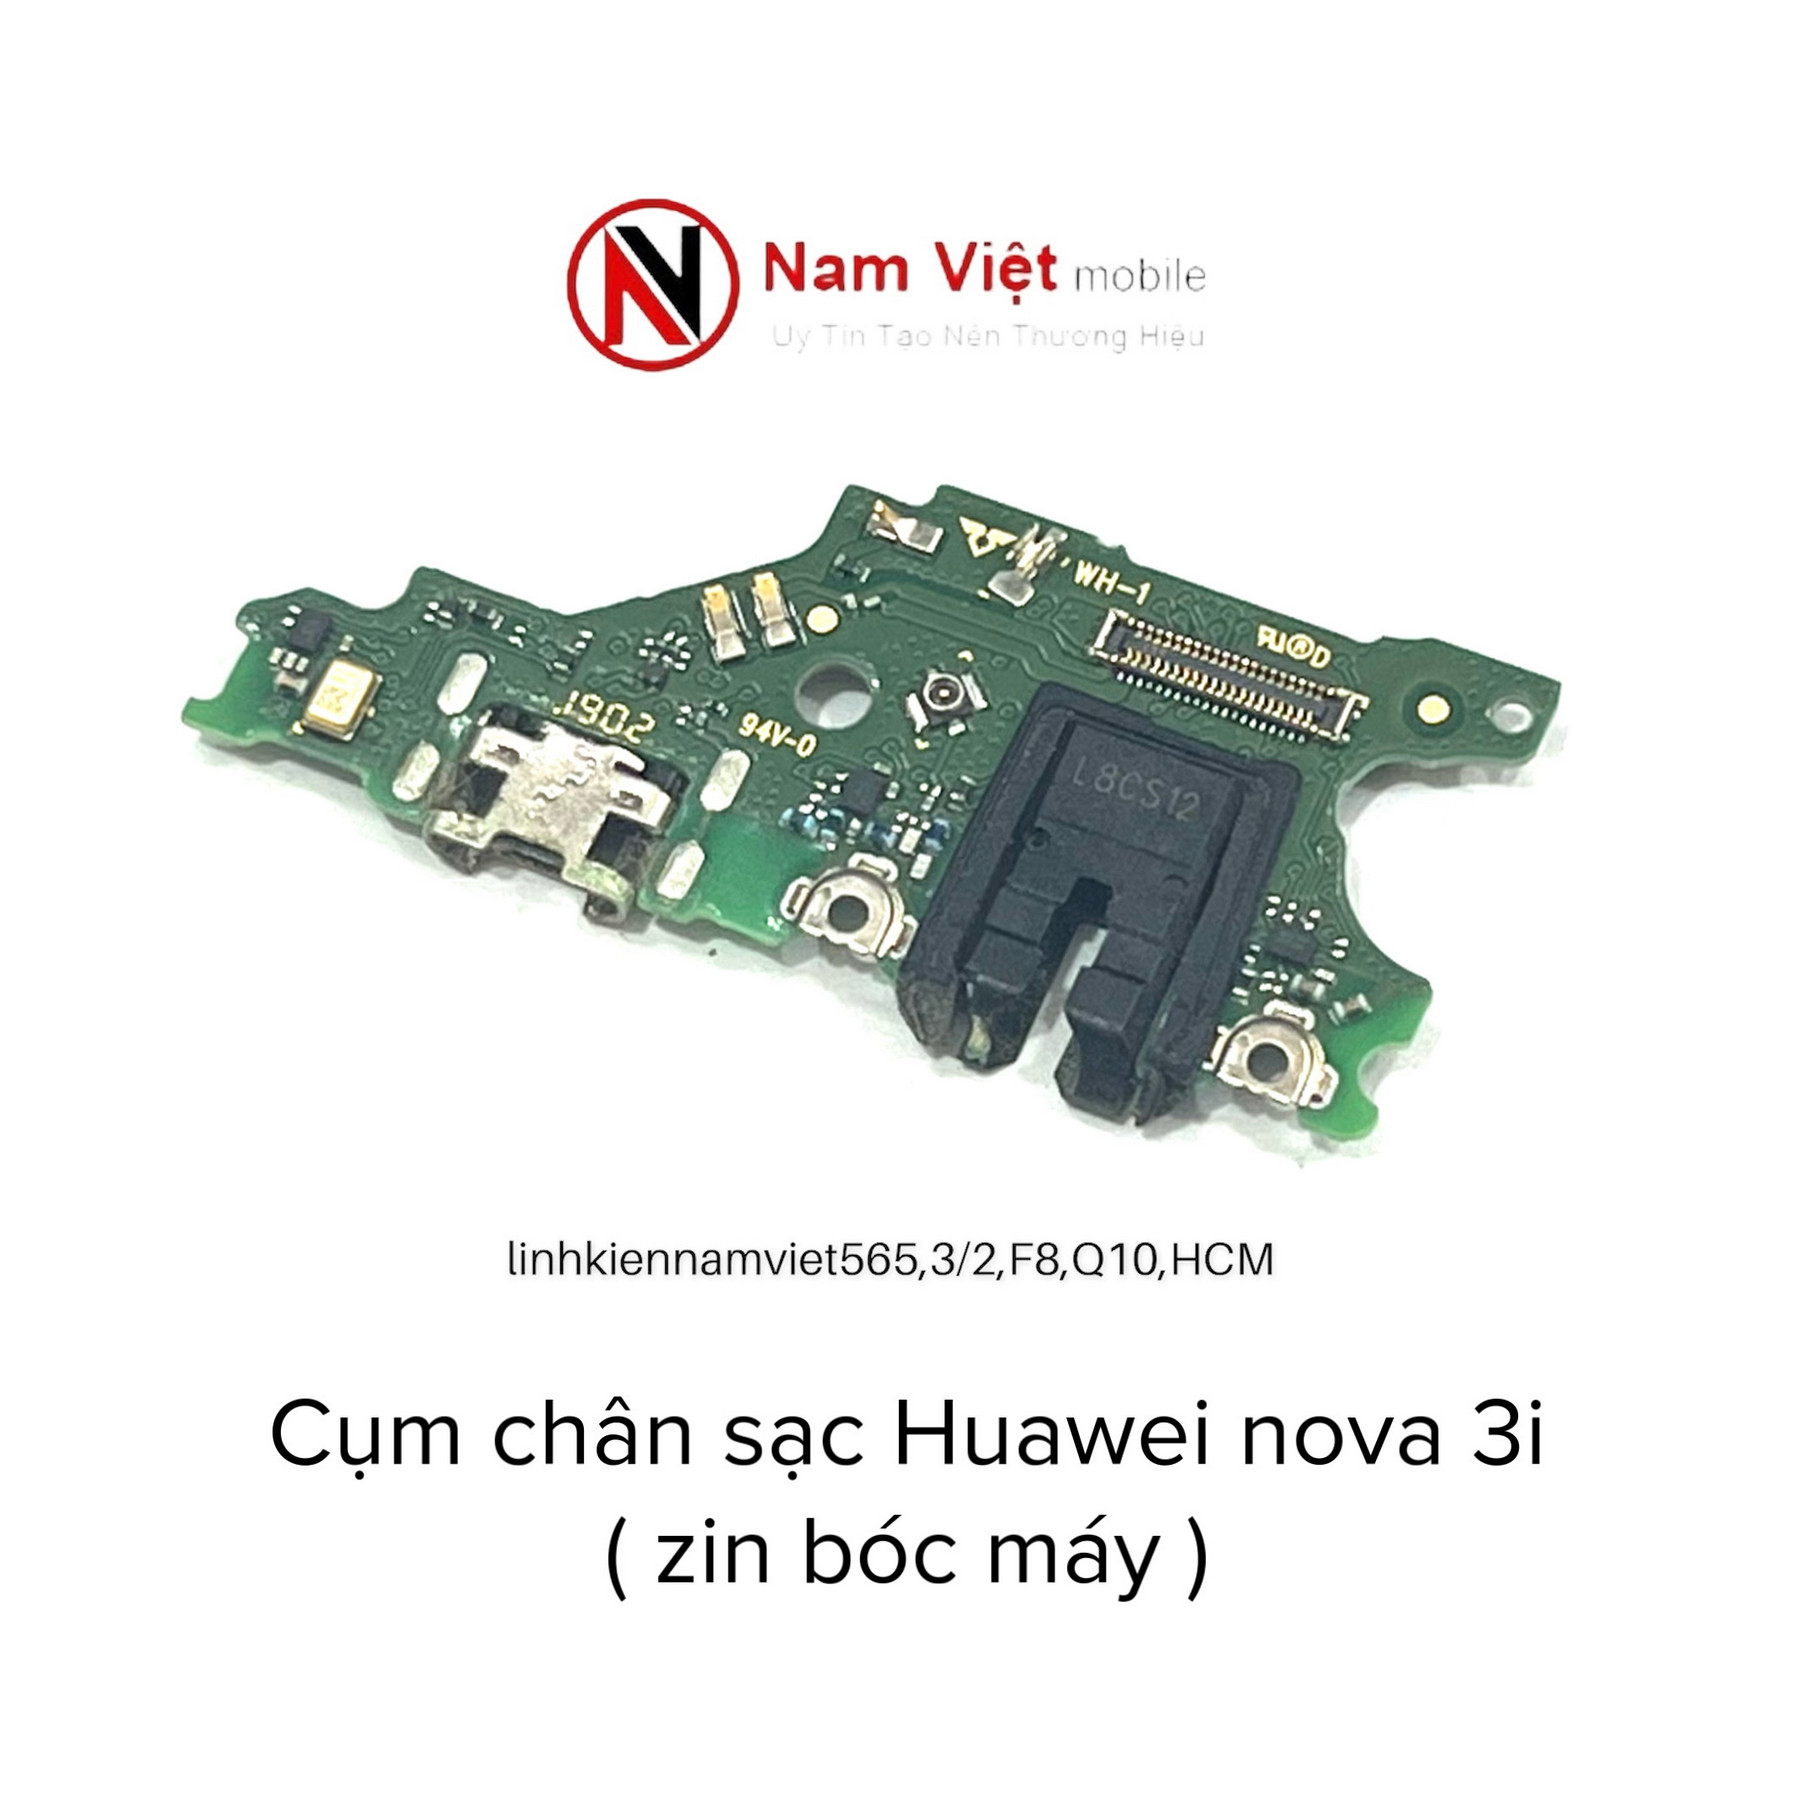 Cụm chân sạc Huawei Nova 3i.